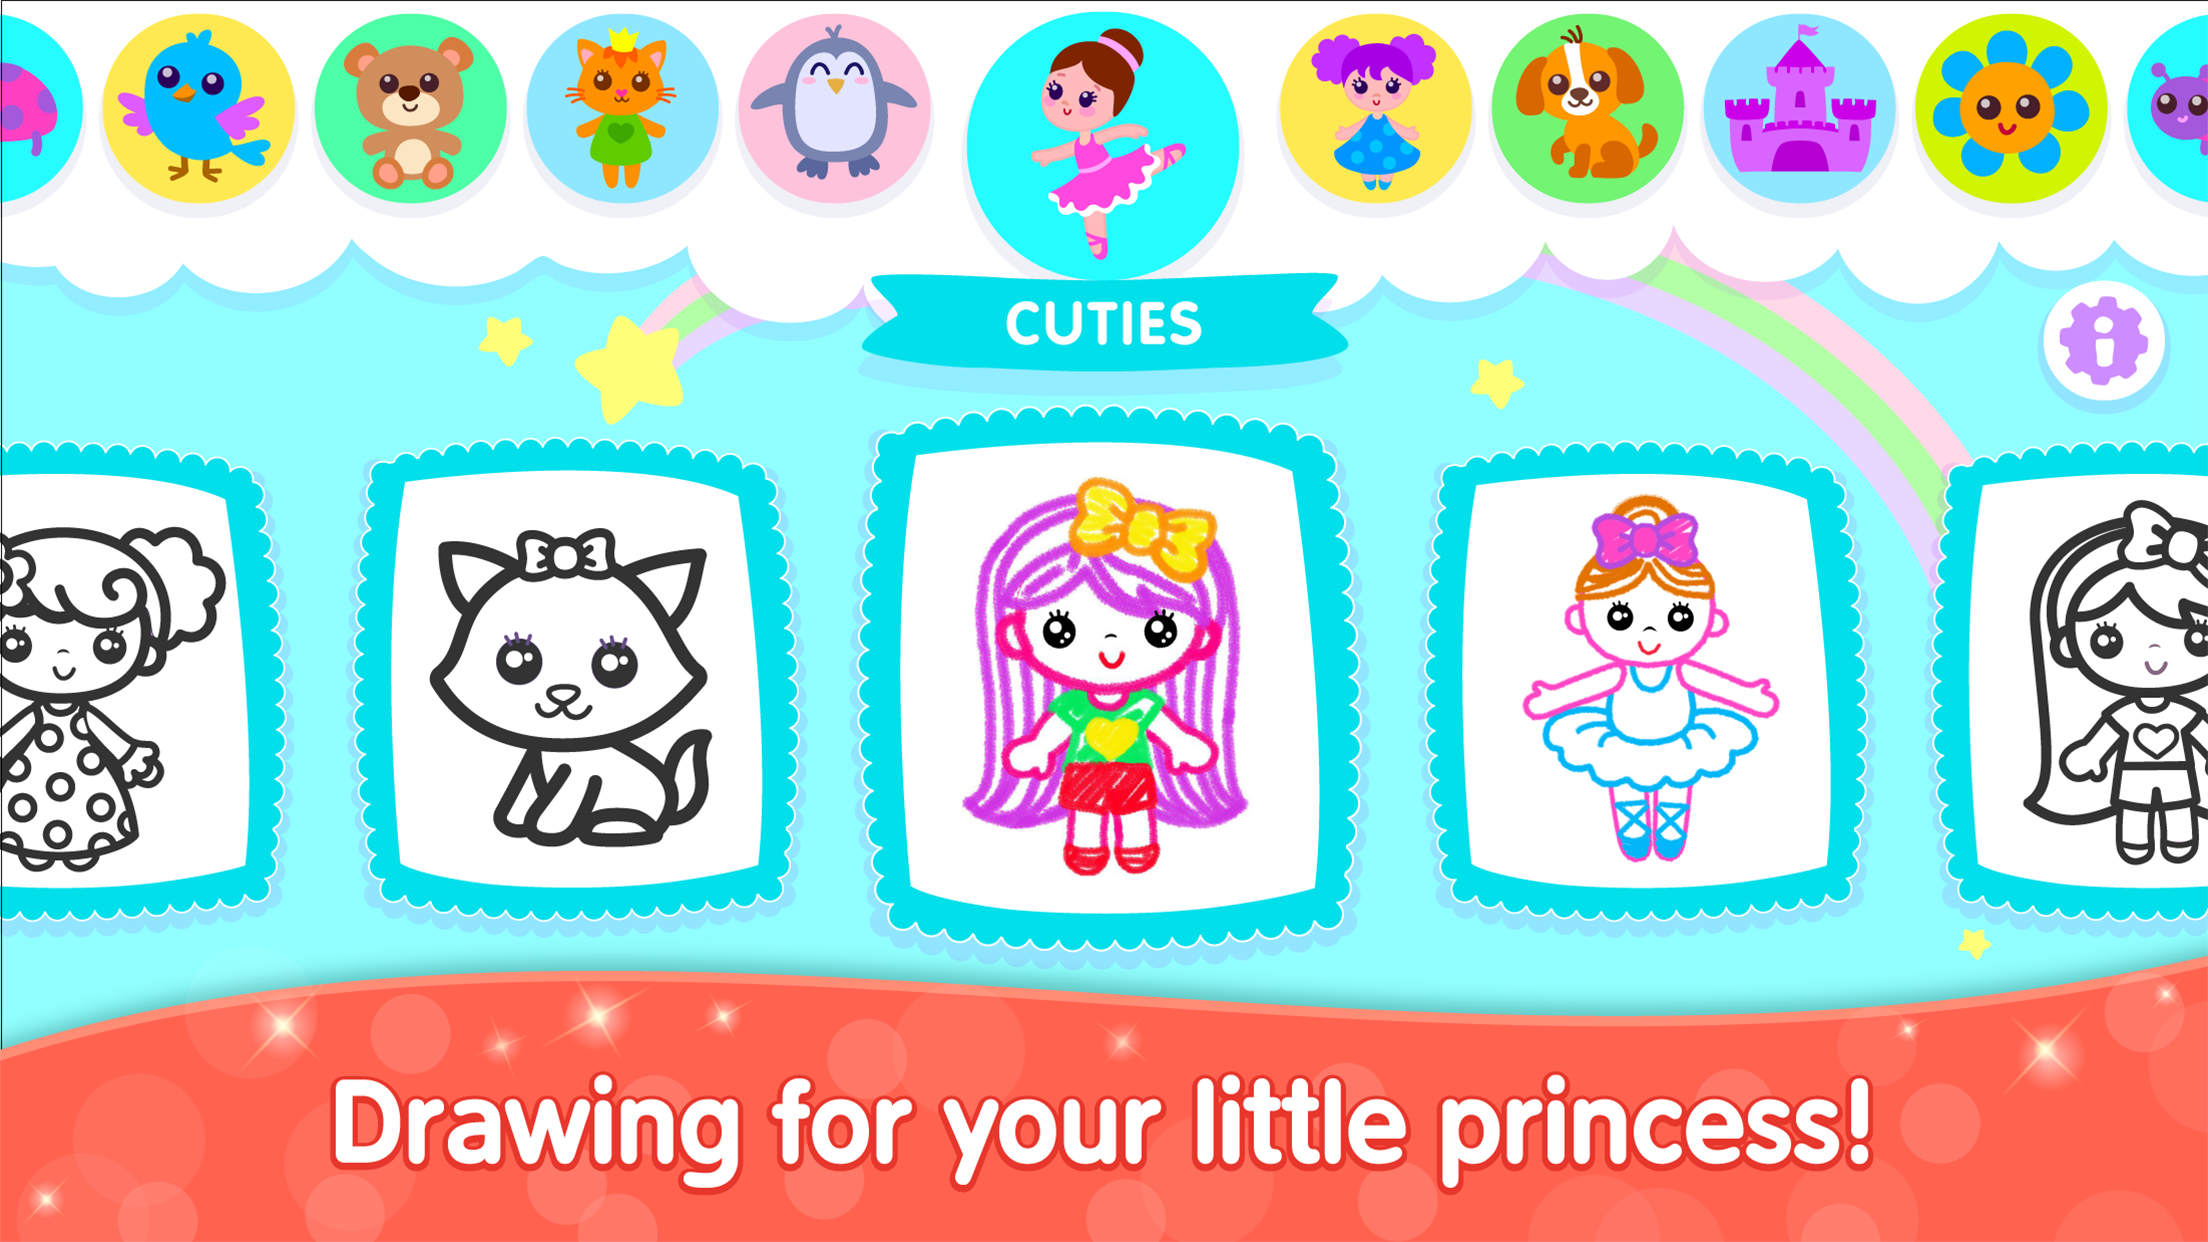 Screenshot 1 of Aplikasi Lukisan Permainan Bini untuk kanak-kanak 2.9.0